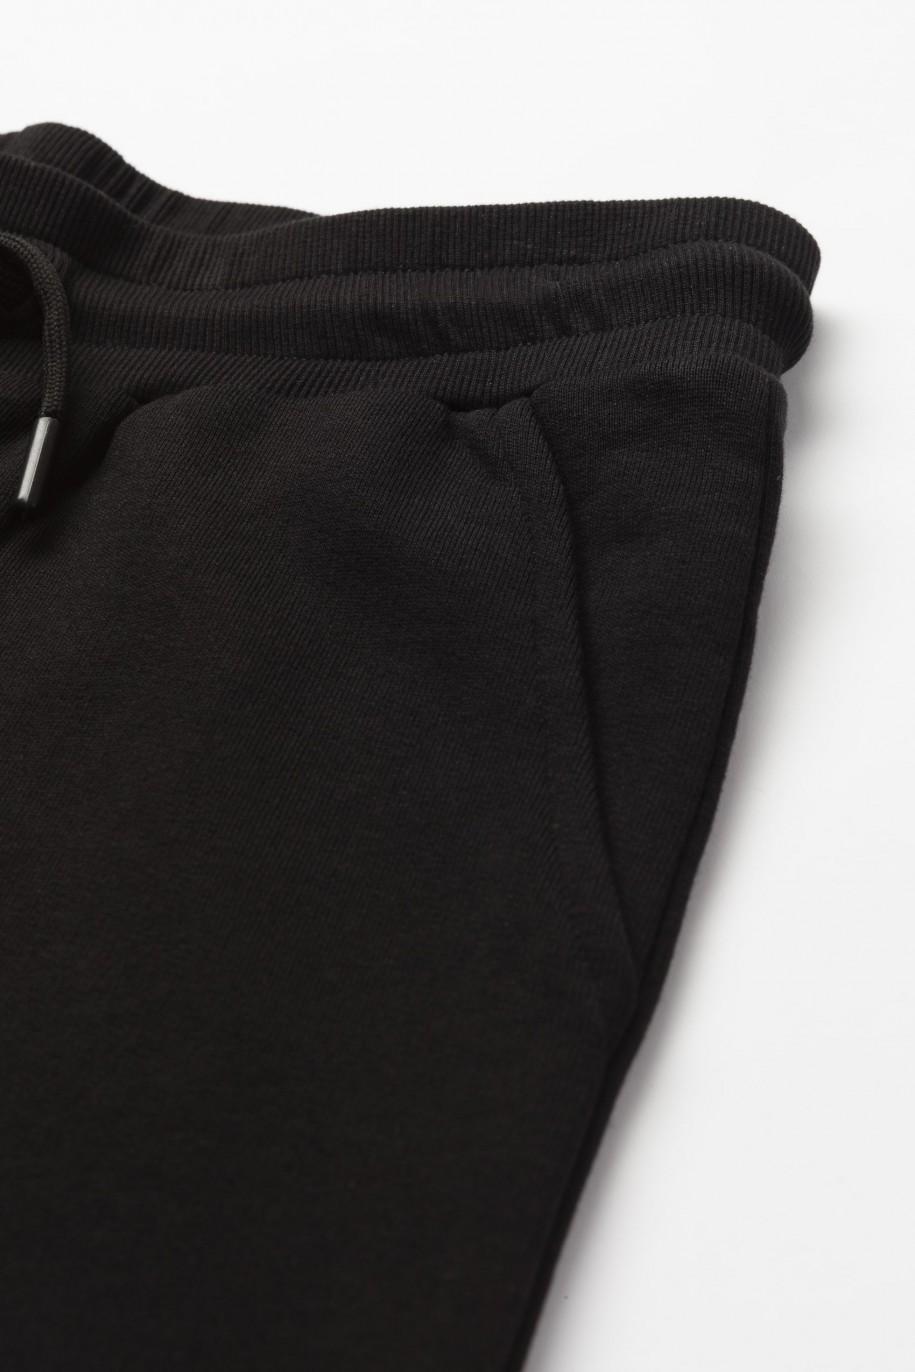 Czarne spodnie dresowe oversize z przestrzennymi kieszeniami na nogawkach - 46795